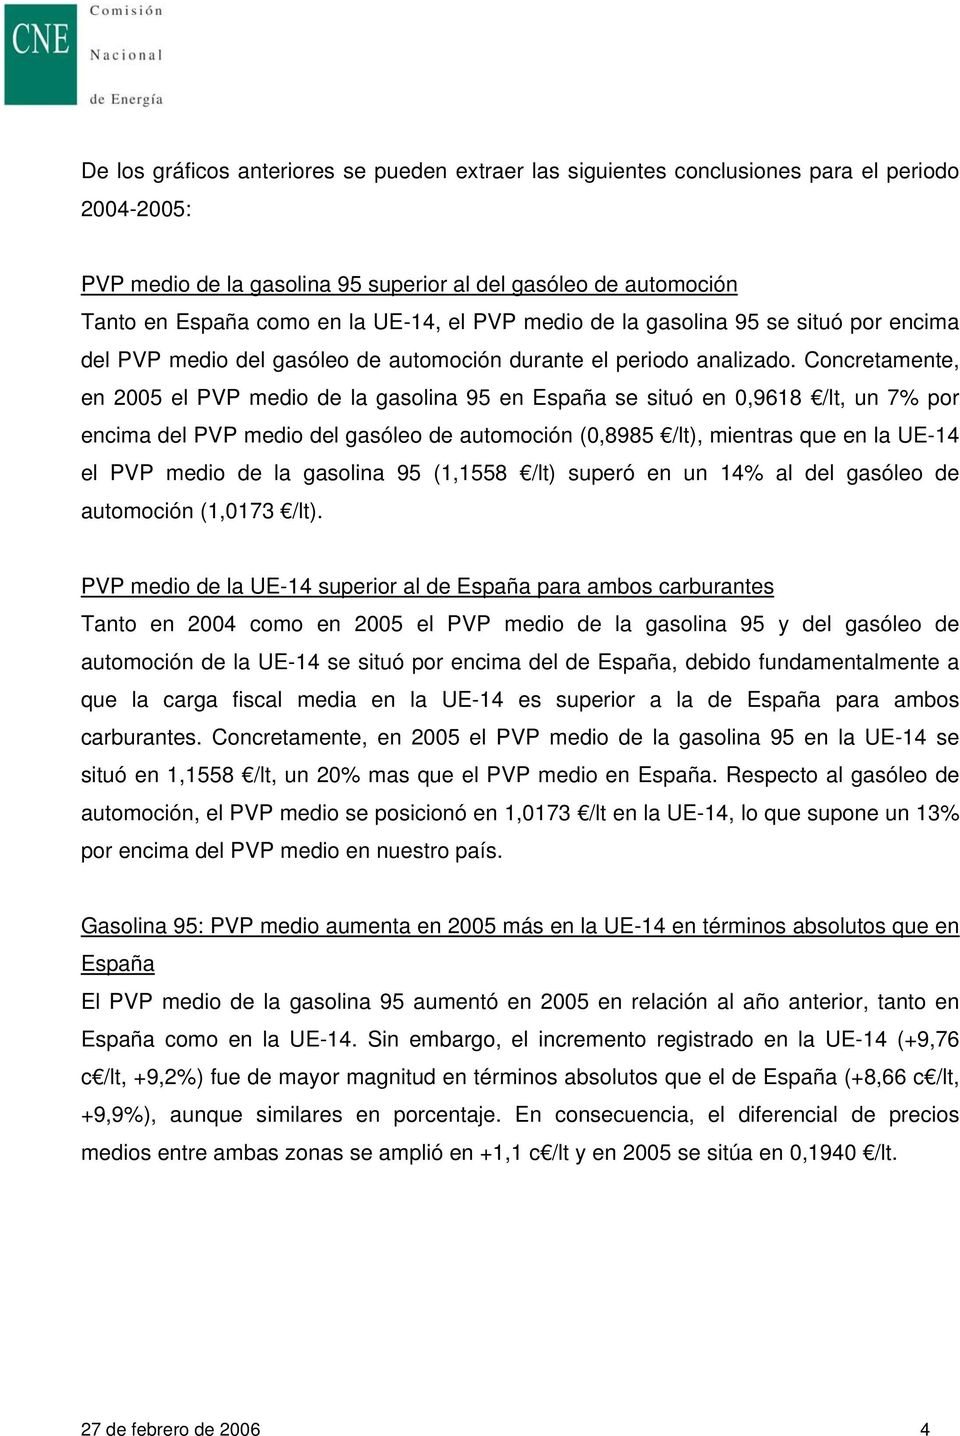 Concretamente, en 2005 el PVP medio de la gasolina 95 en España se situó en 0,9618 /lt, un 7% por encima del PVP medio del gasóleo de automoción (0,8985 /lt), mientras que en la UE-14 el PVP medio de